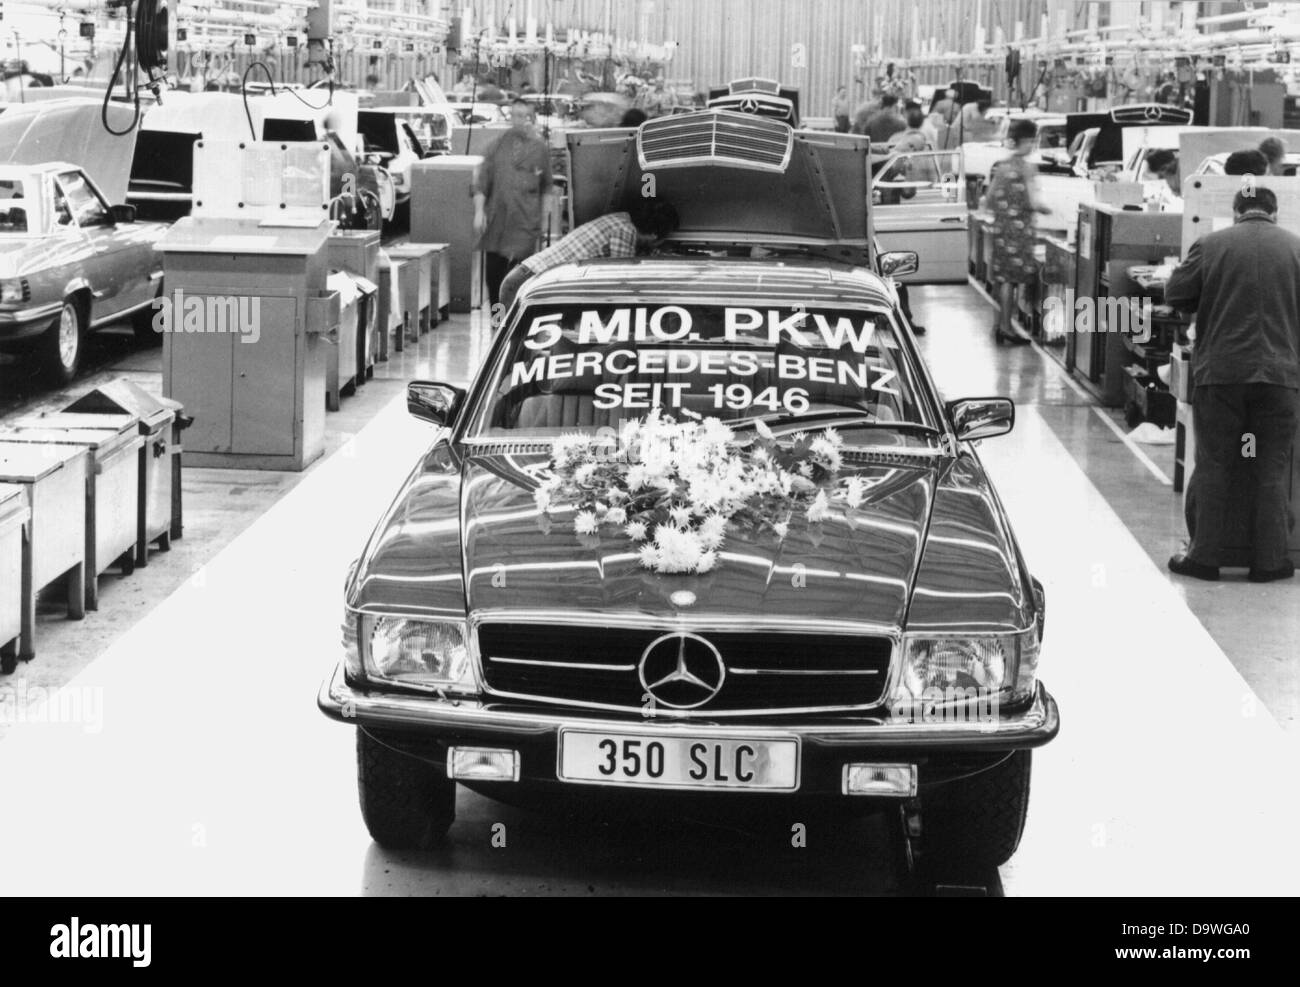 Mercedes-Benz Pkw, seit 1946